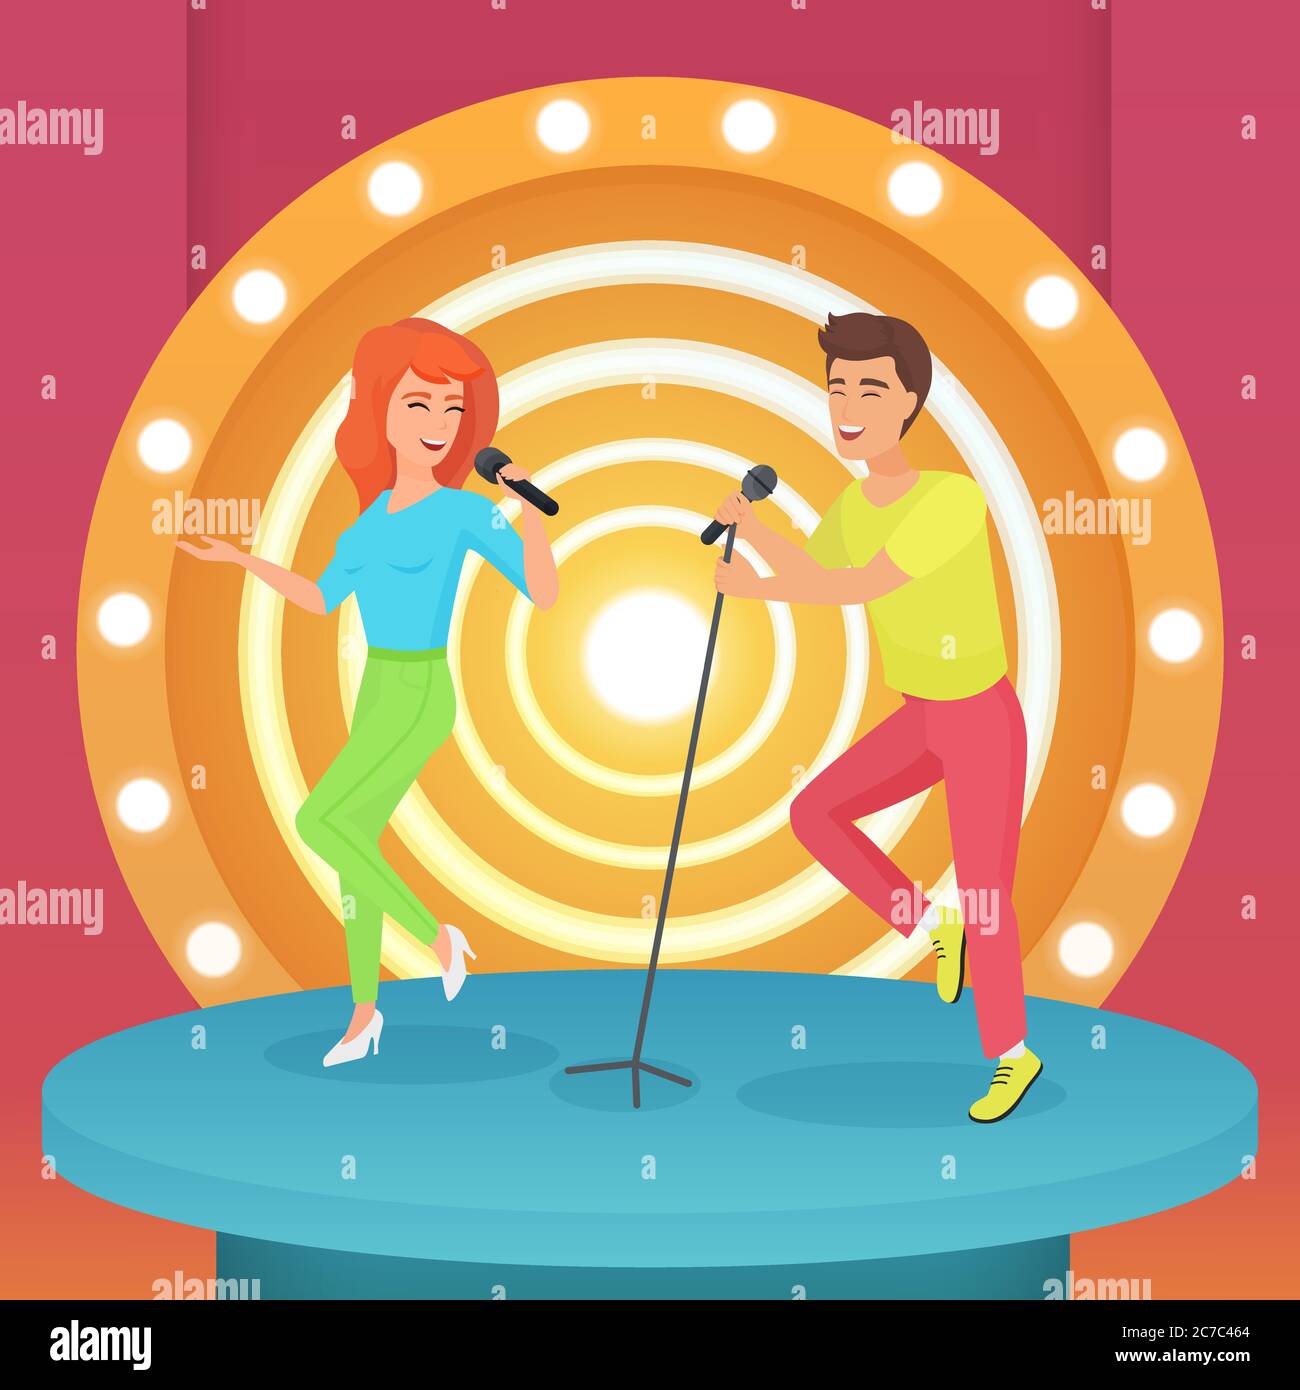 Couple, homme et femme chantant une chanson karaoké avec microphone debout sur la scène moderne de cercle avec des lampes illustration vectorielle Illustration de Vecteur